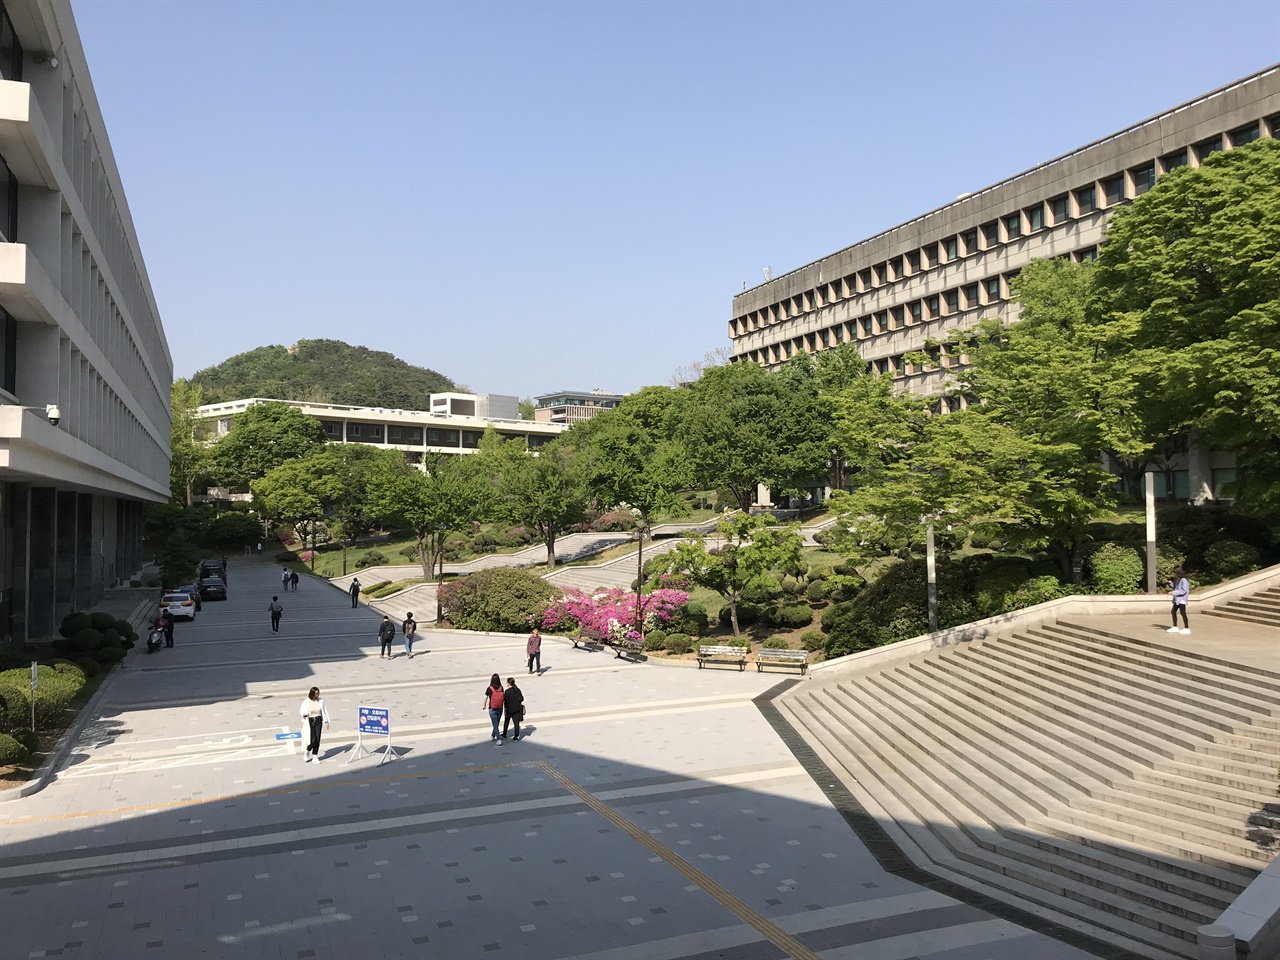 사진 왼편의 행정관과 오른편 중앙도서관 사이 공간이 ‘아크로폴리스’다. 서울대학교의 집회, 시위 공간으로 가장 ‘애용’된 공간이다. 